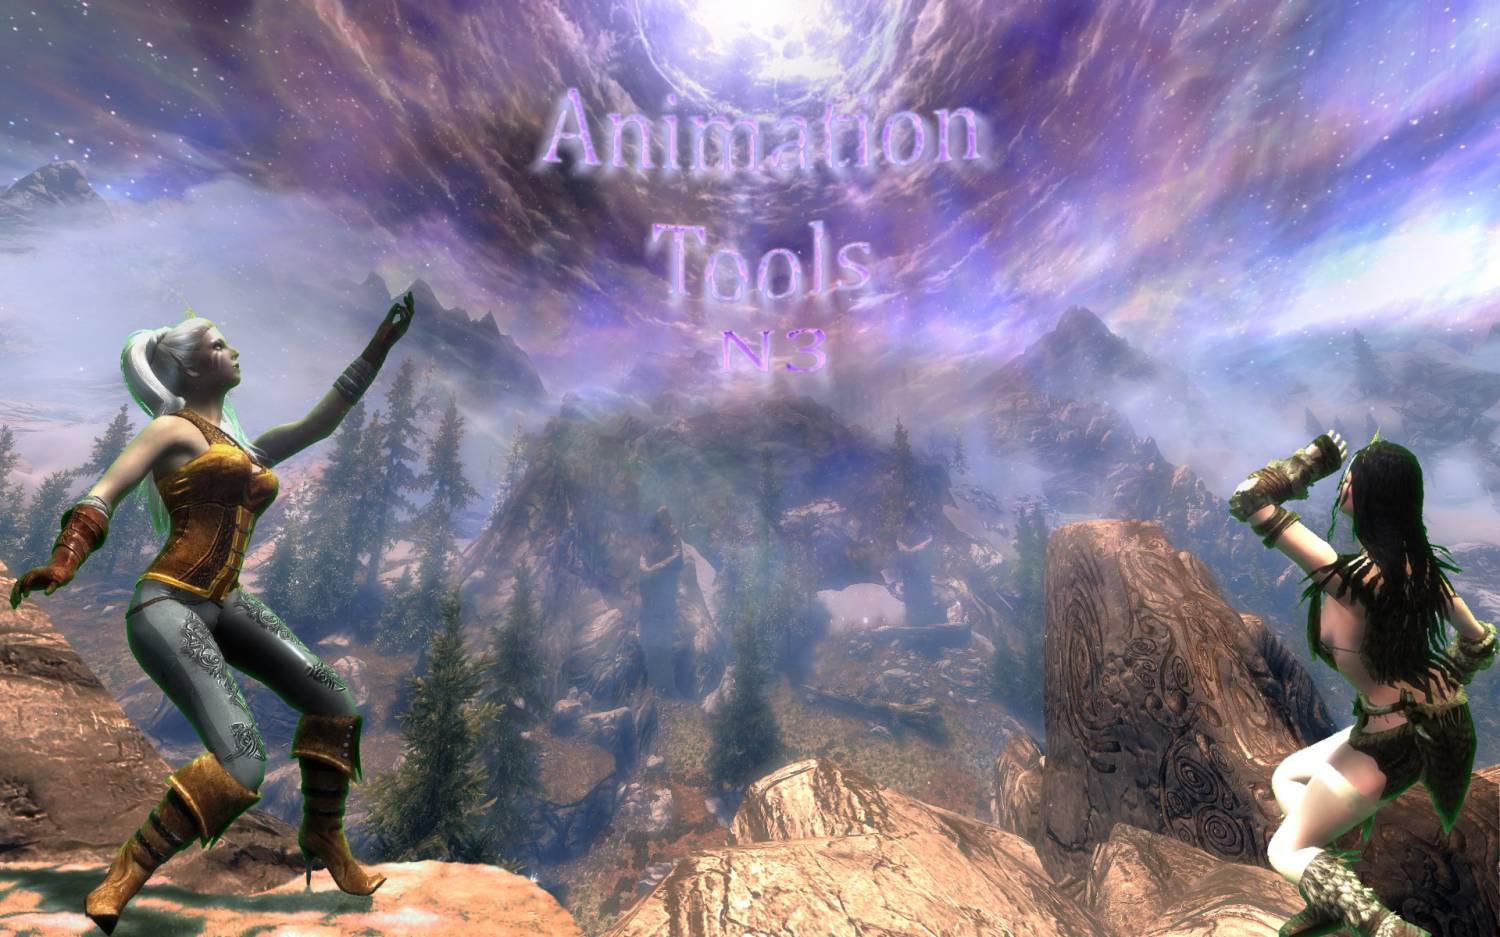 Animation Tools N3 (с инверсной кинематикой)